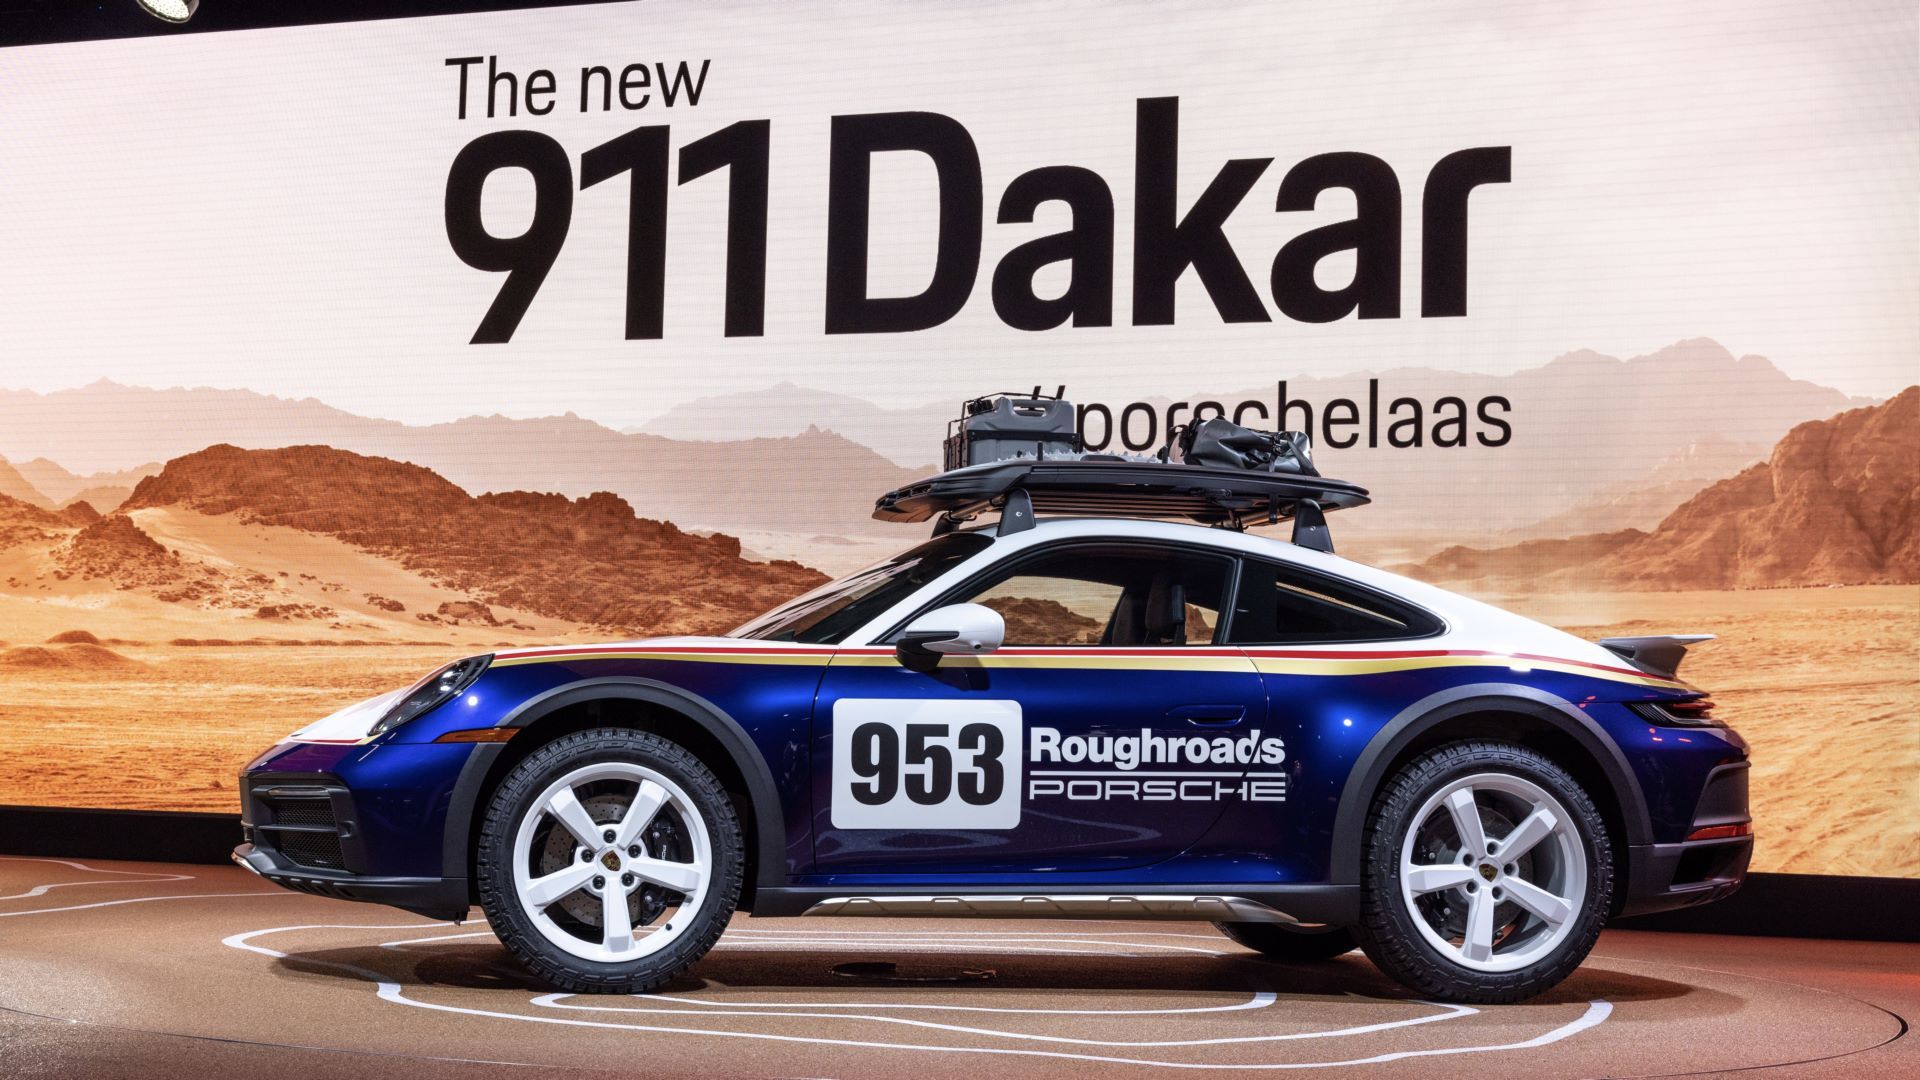 Porsche-911-Dakar-2